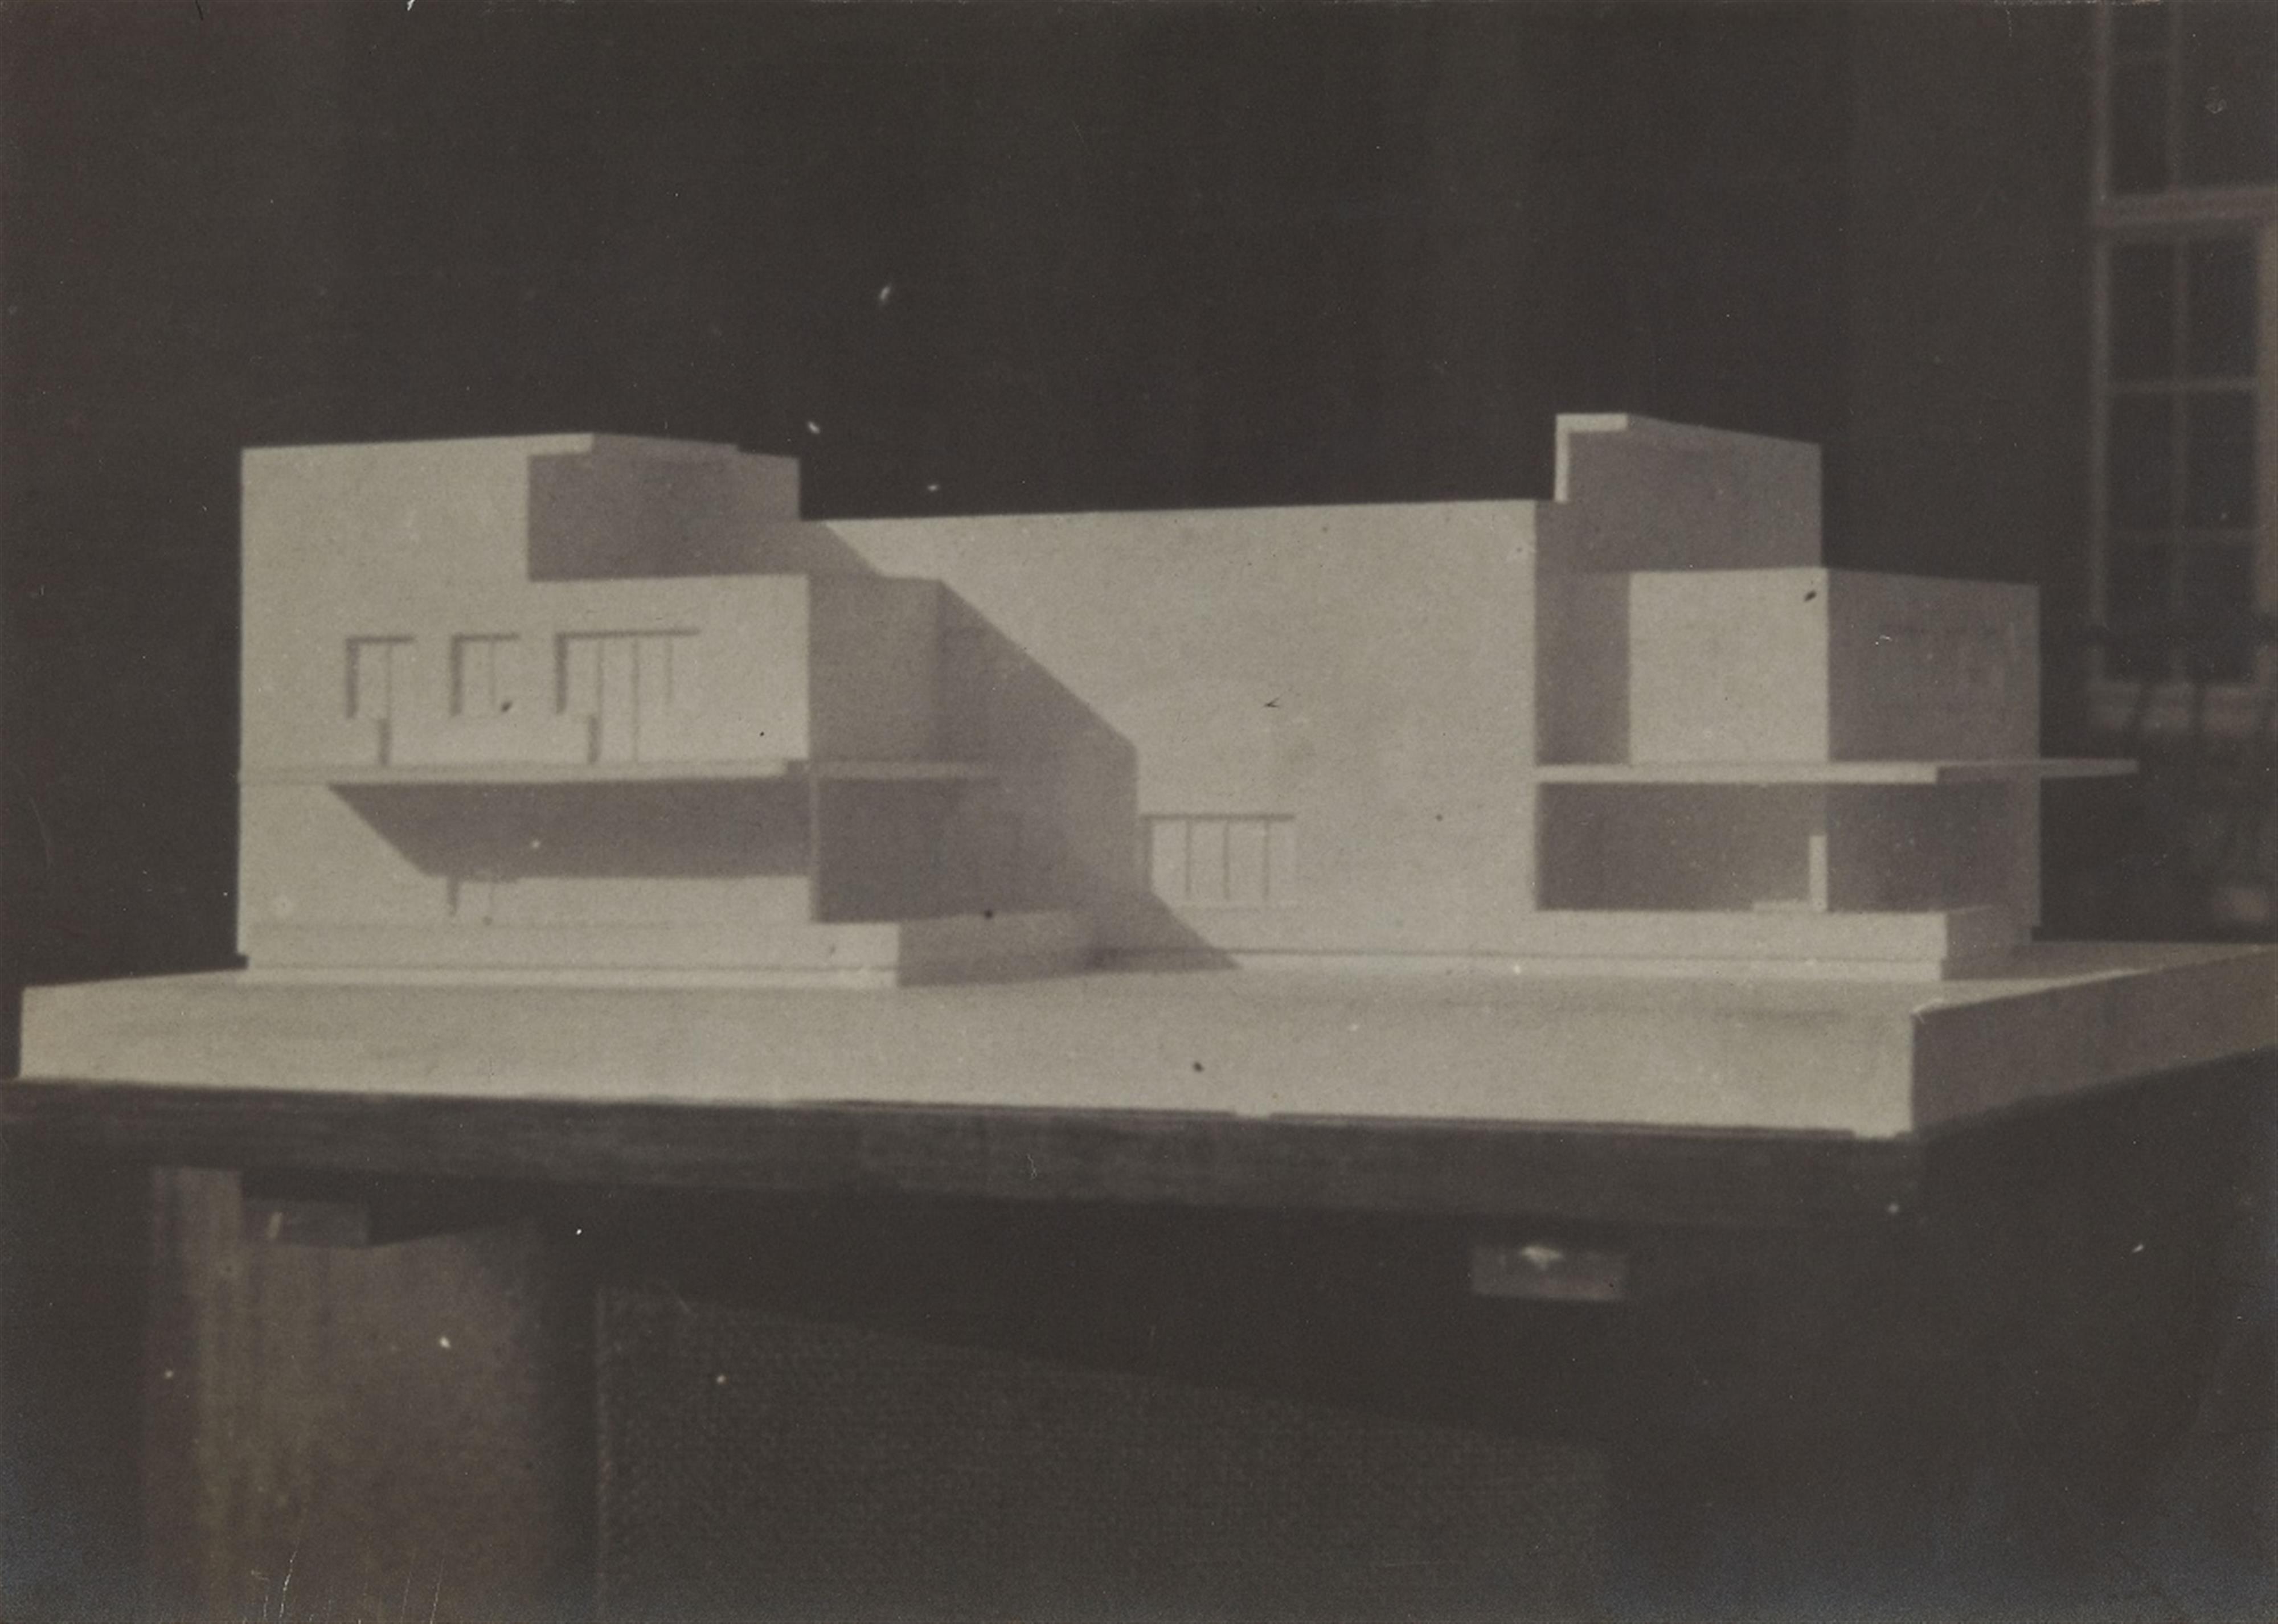 Bauatelier Walter Gropius - Modell eines Bauhausmeister-Einzelhauses, Dessau - image-1